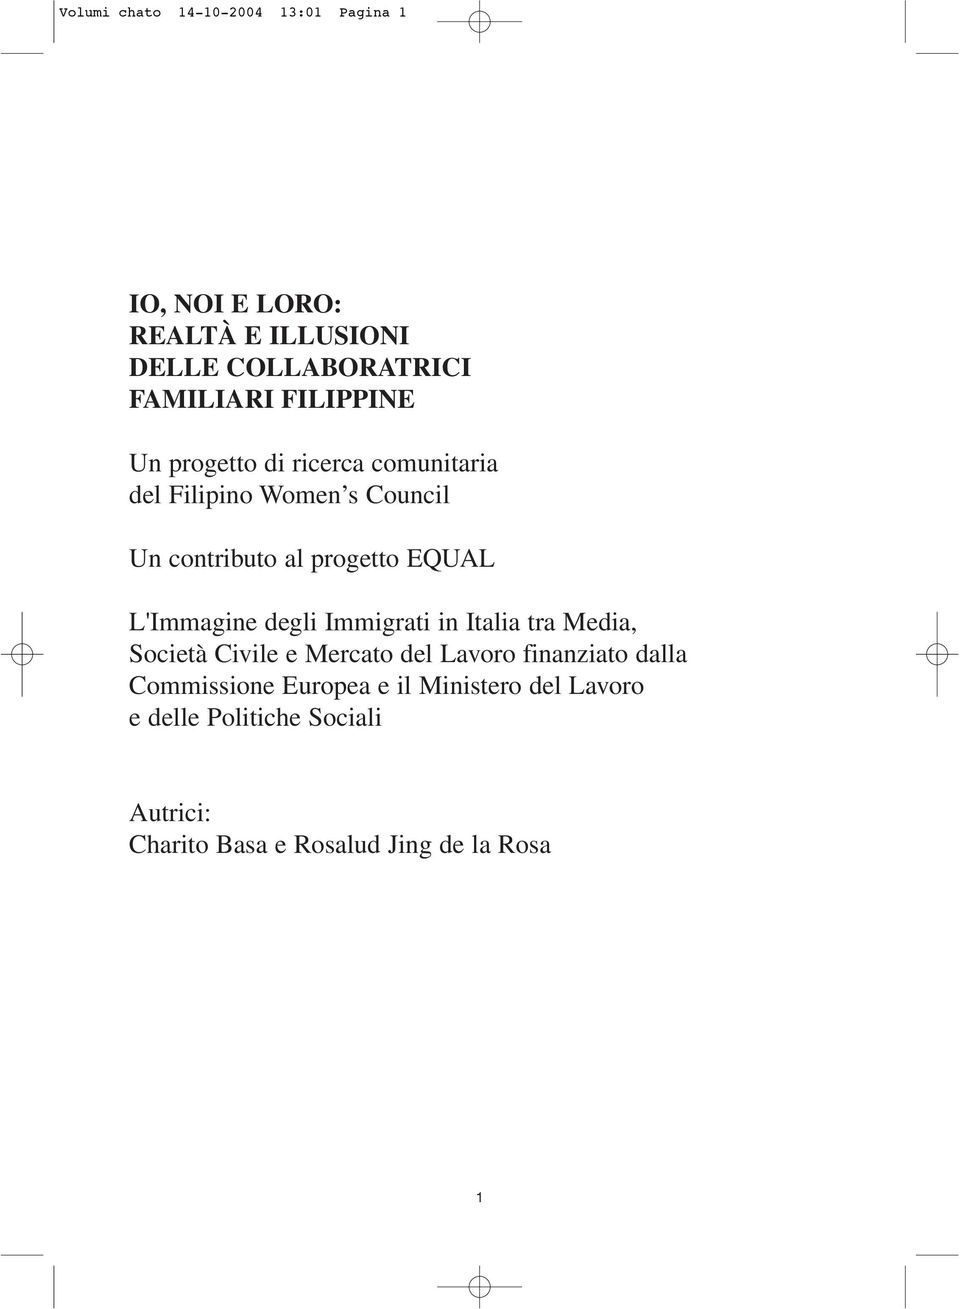 L'Immagine degli Immigrati in Italia tra Media, Società Civile e Mercato del Lavoro finanziato dalla